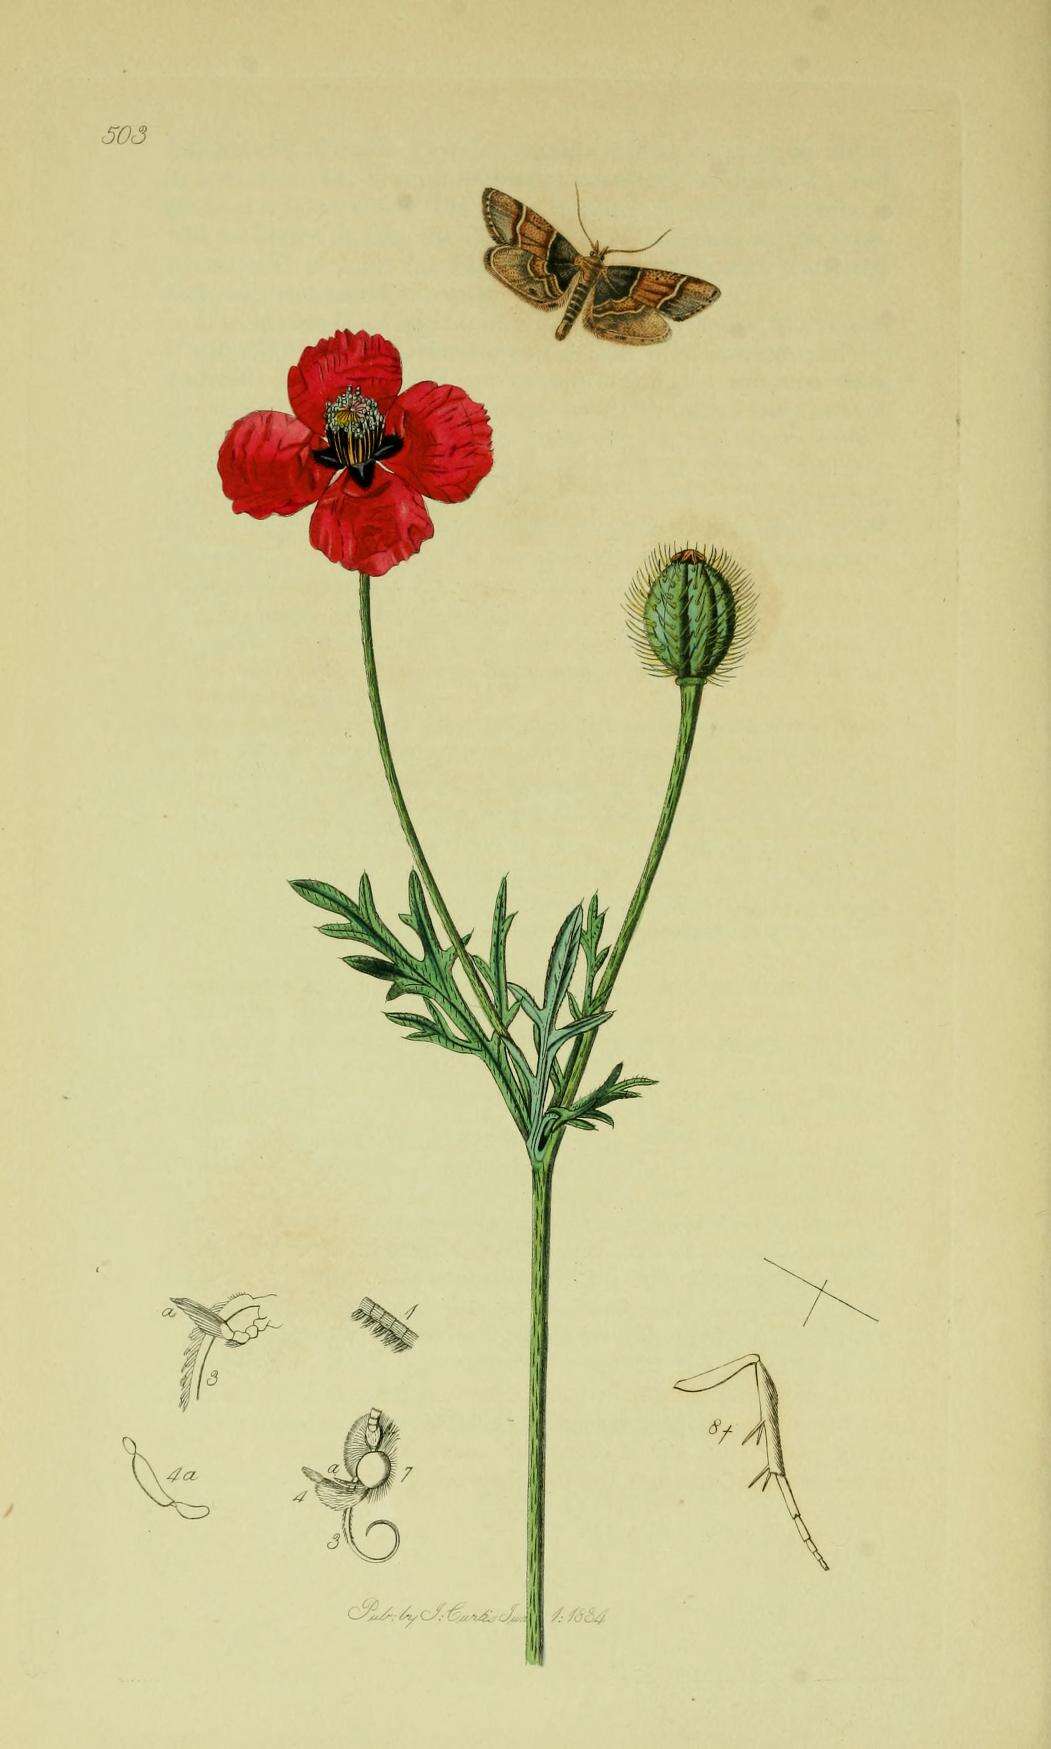 Image of Pyralis pictalis Curtis 1834